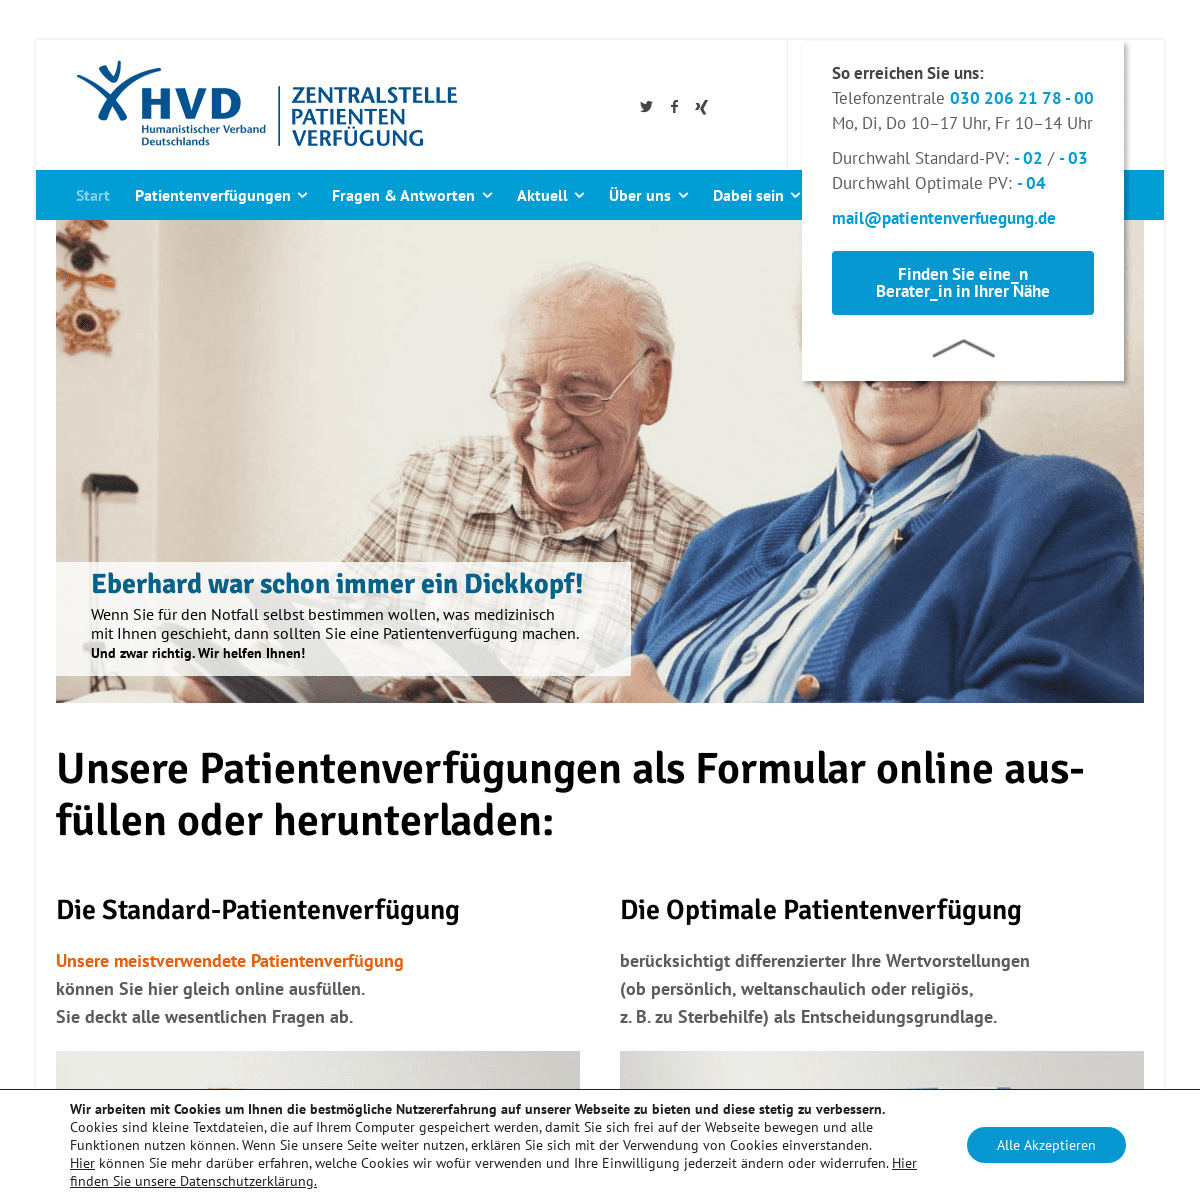 A complete backup of https://patientenverfuegung.de